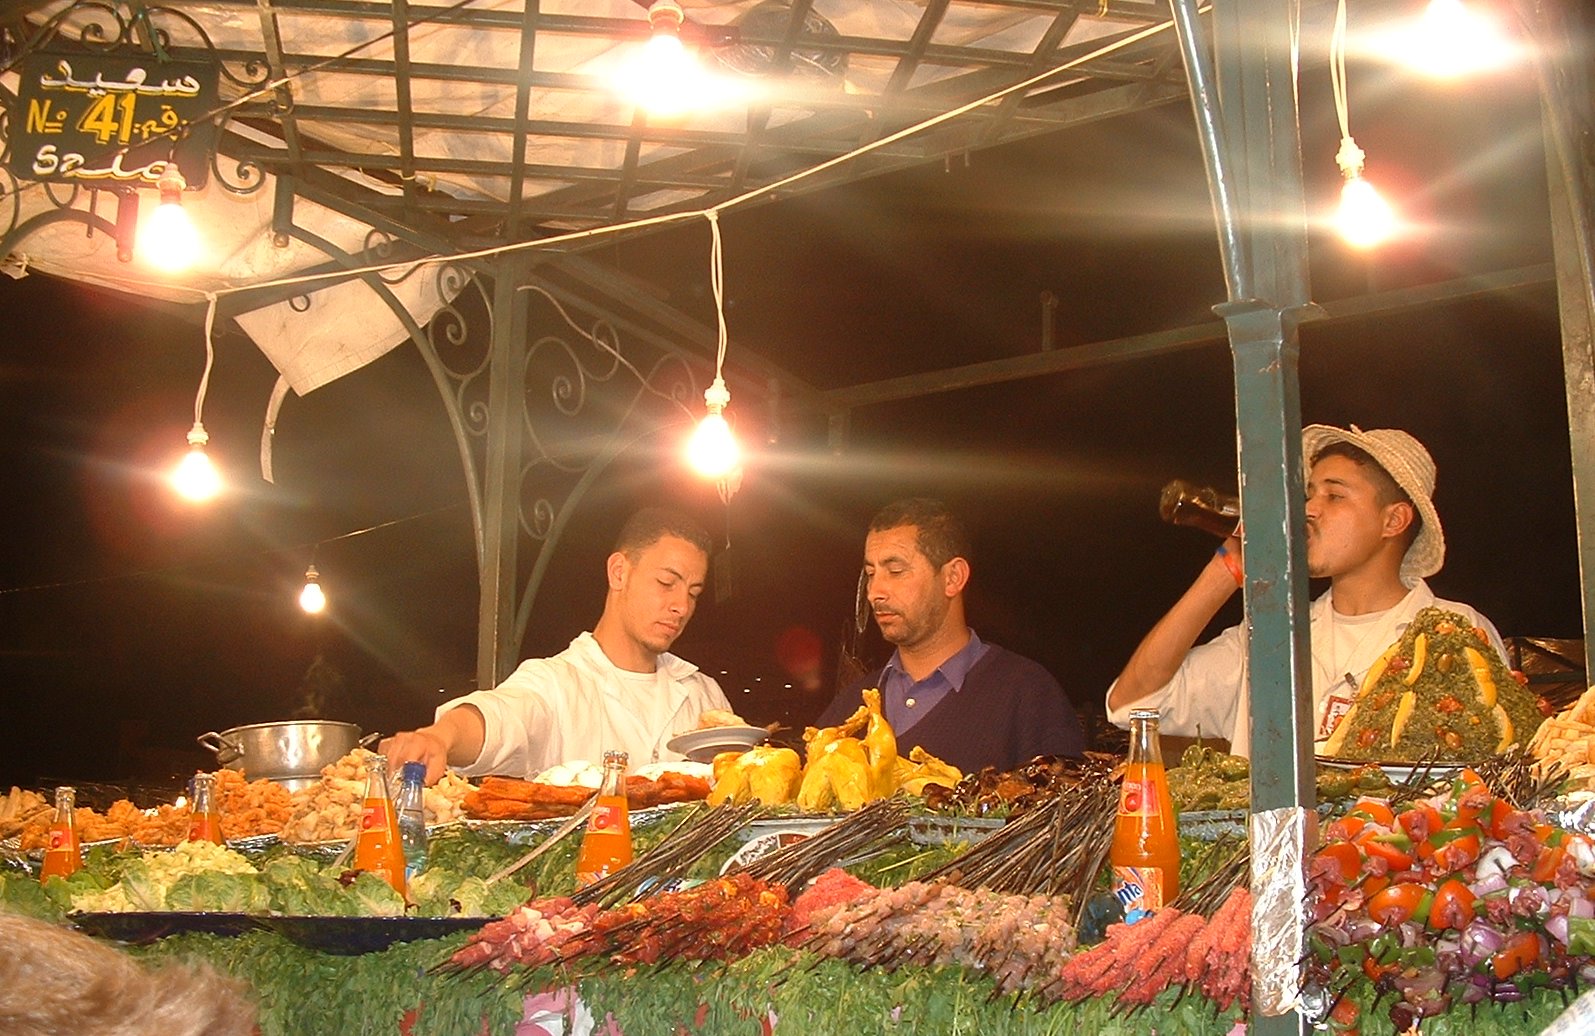 Food_stall,_Marrakech.JPG?width=300